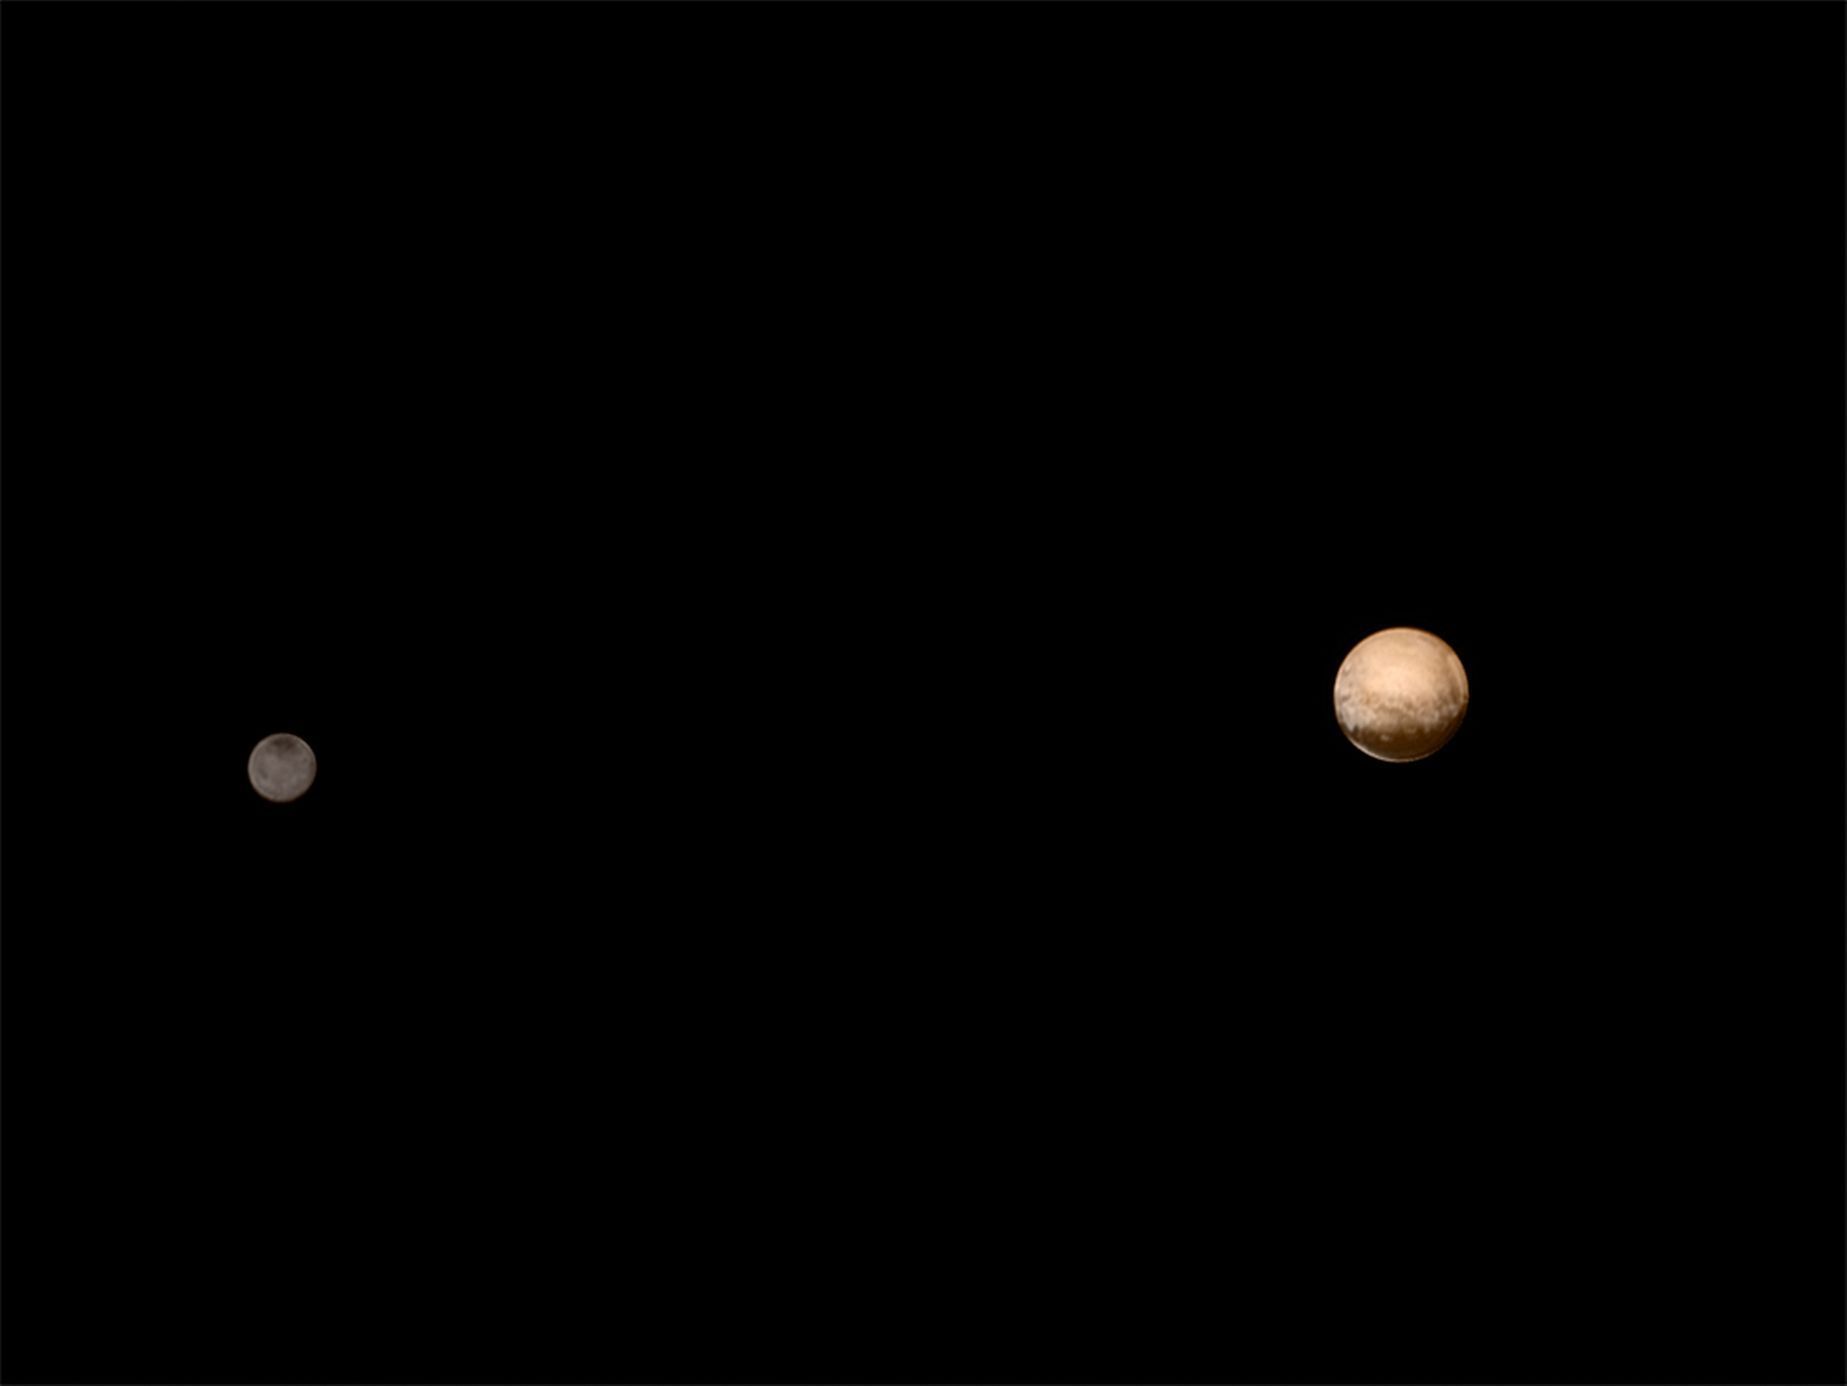 Pluto a Charon